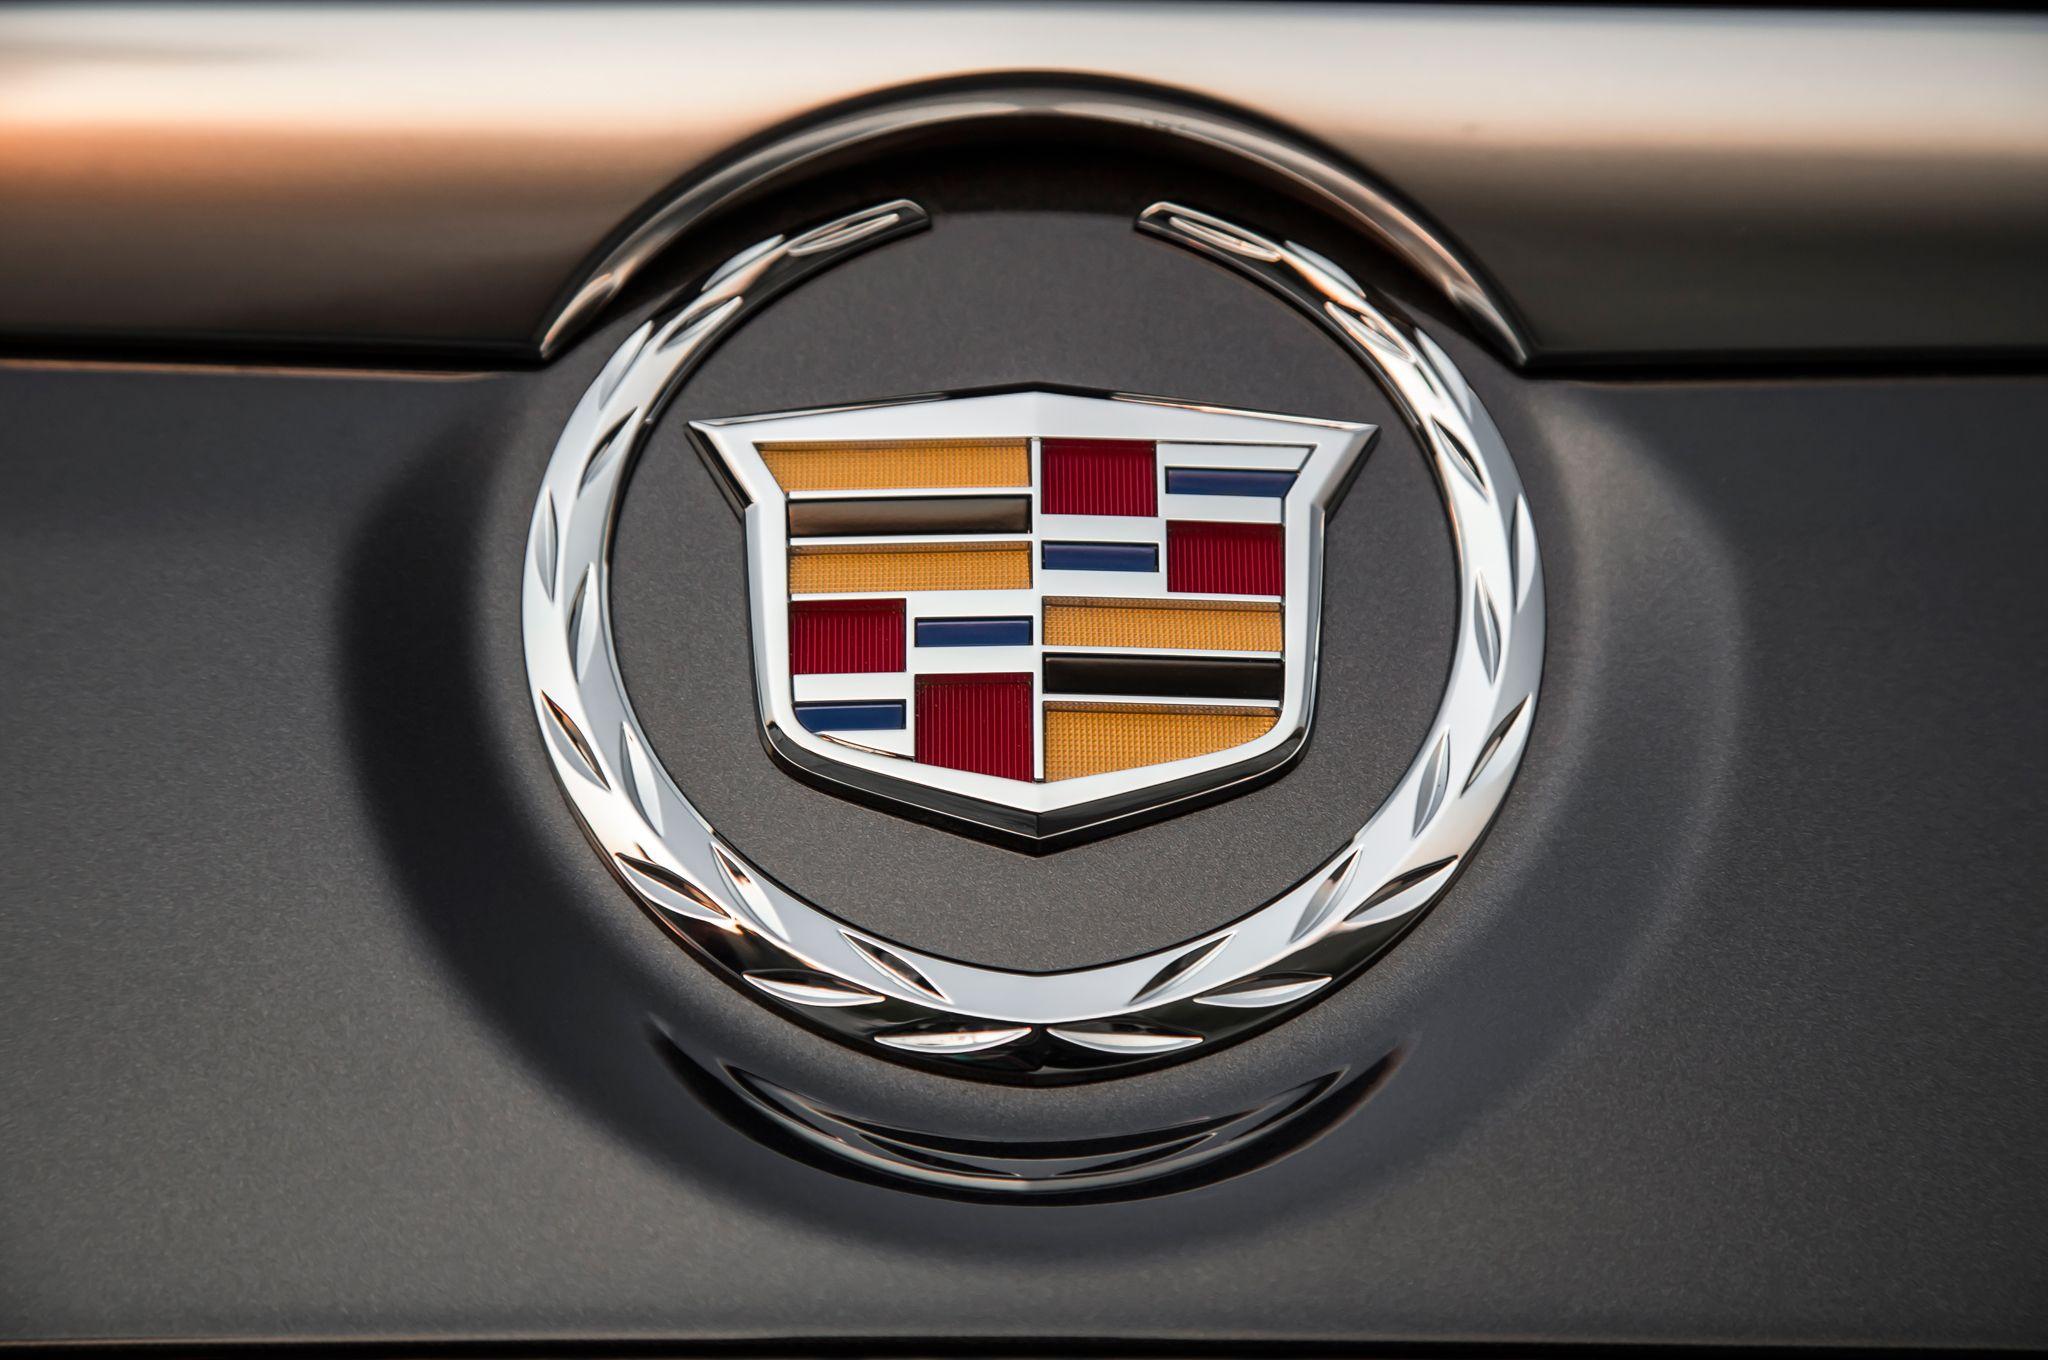 2014 New Cadillac Logo - 2015 Cadillac Escalade ESV First Test - Motor Trend